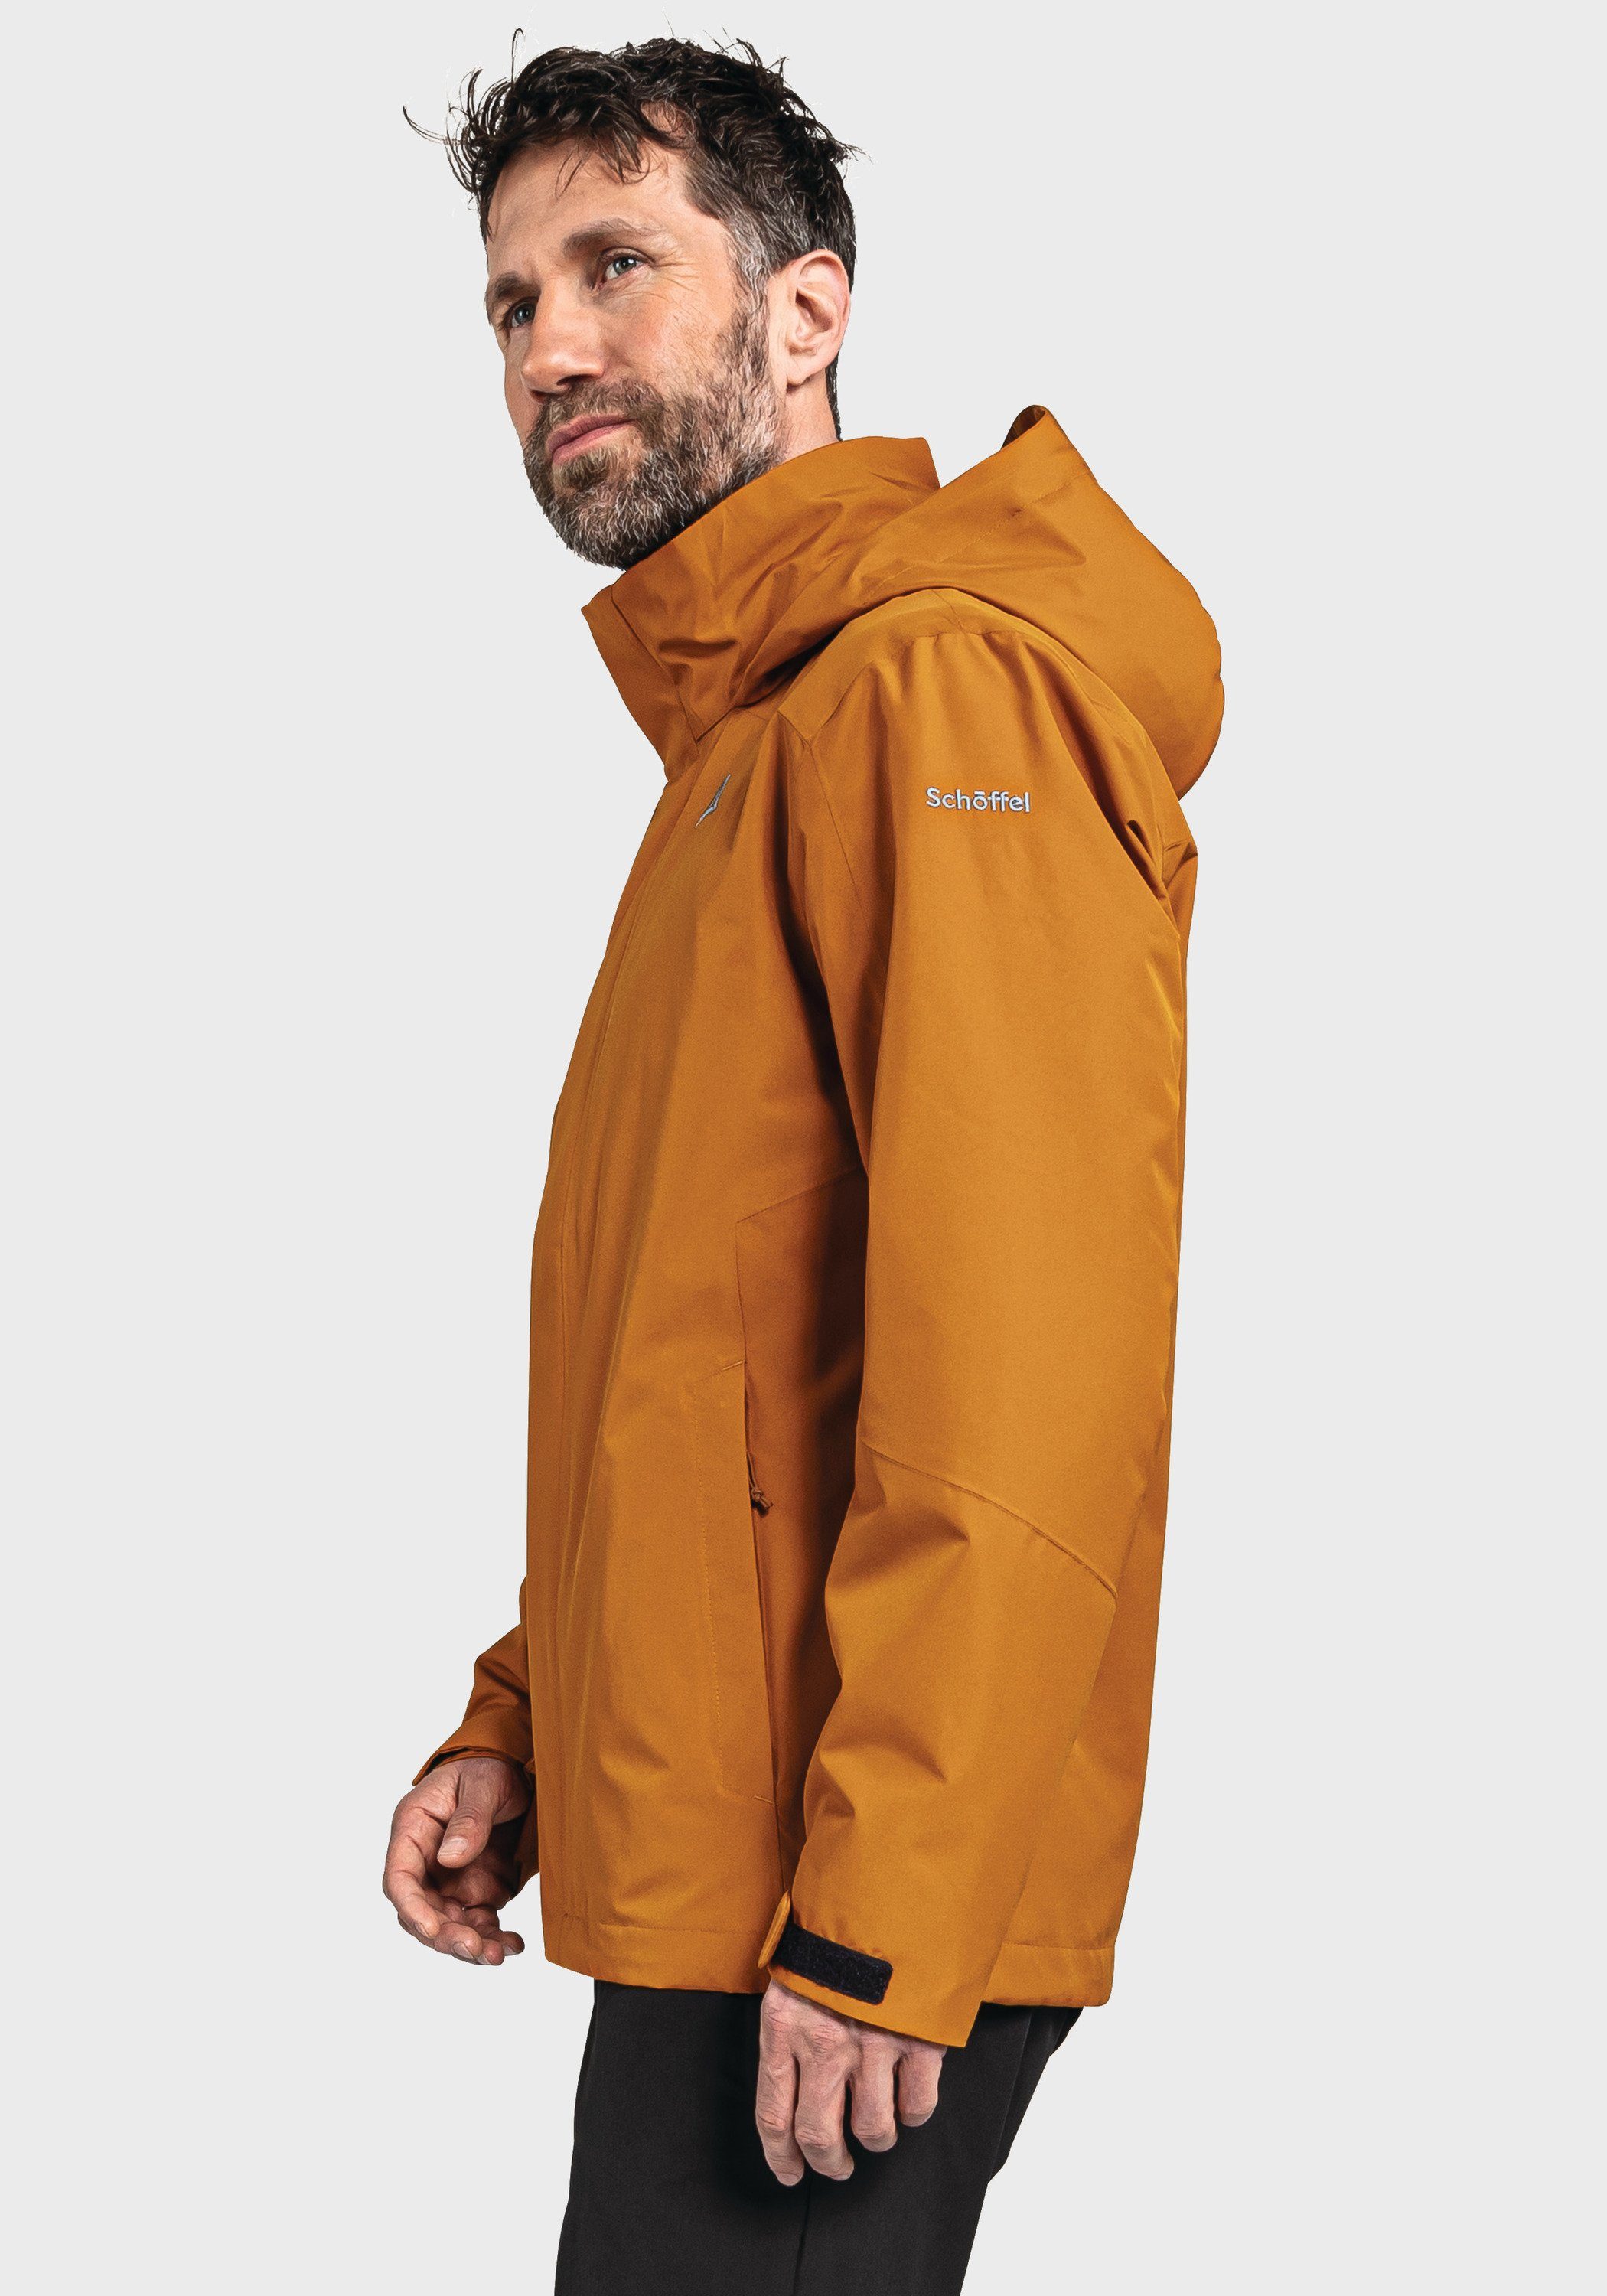 Partinello Schöffel M Doppeljacke orange Jacket 3in1